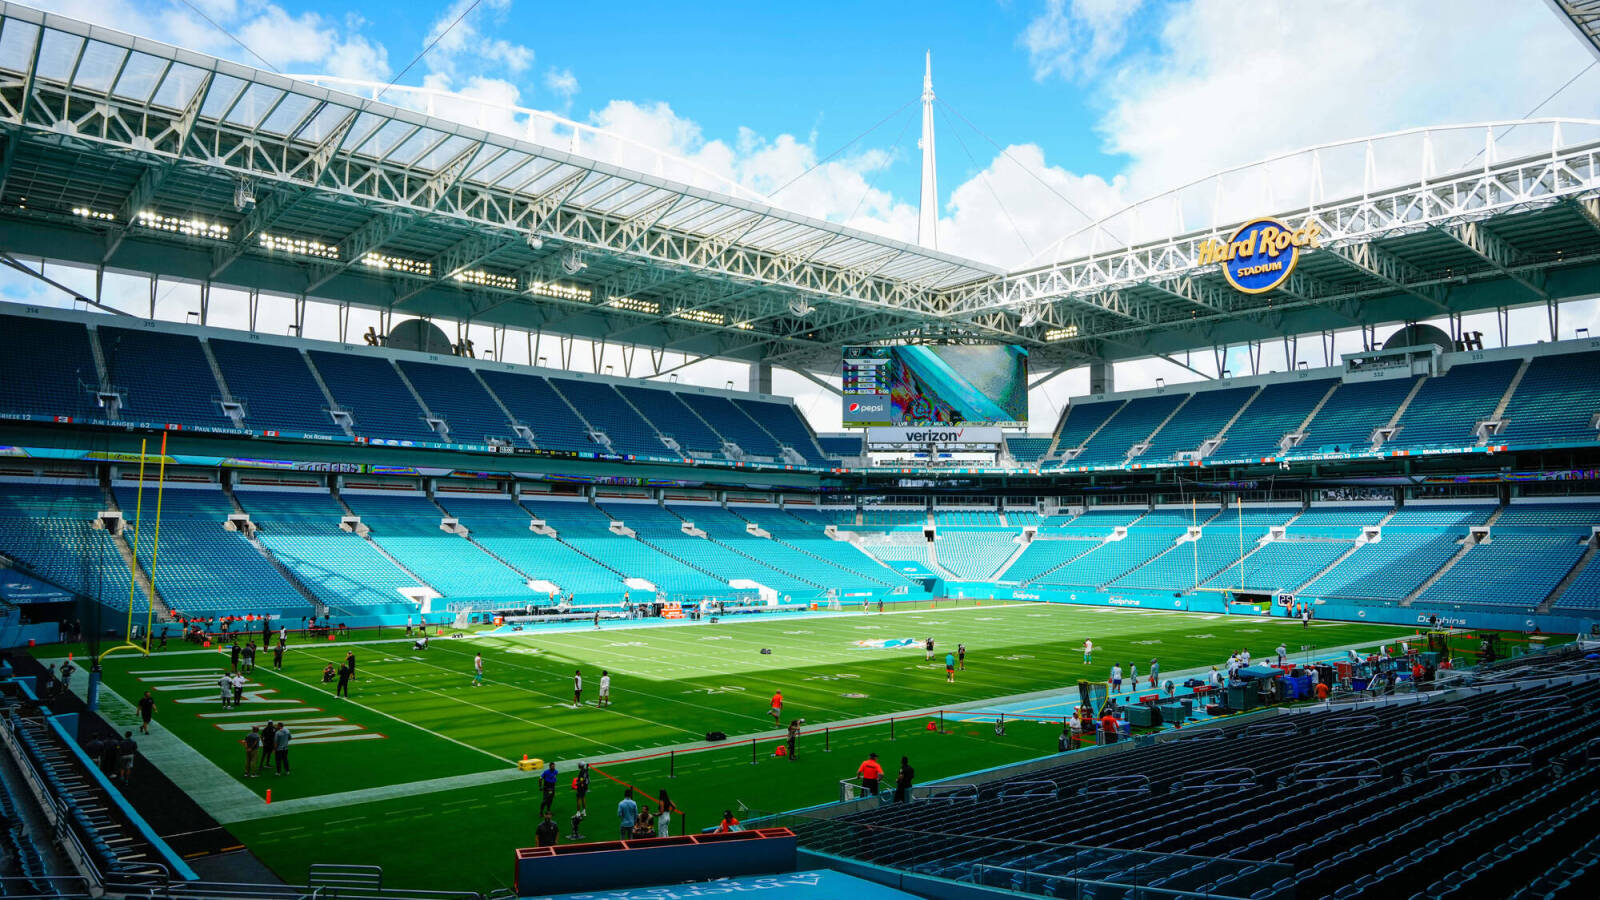 Miami confident it can win Super Bowl LXI bid in 2027